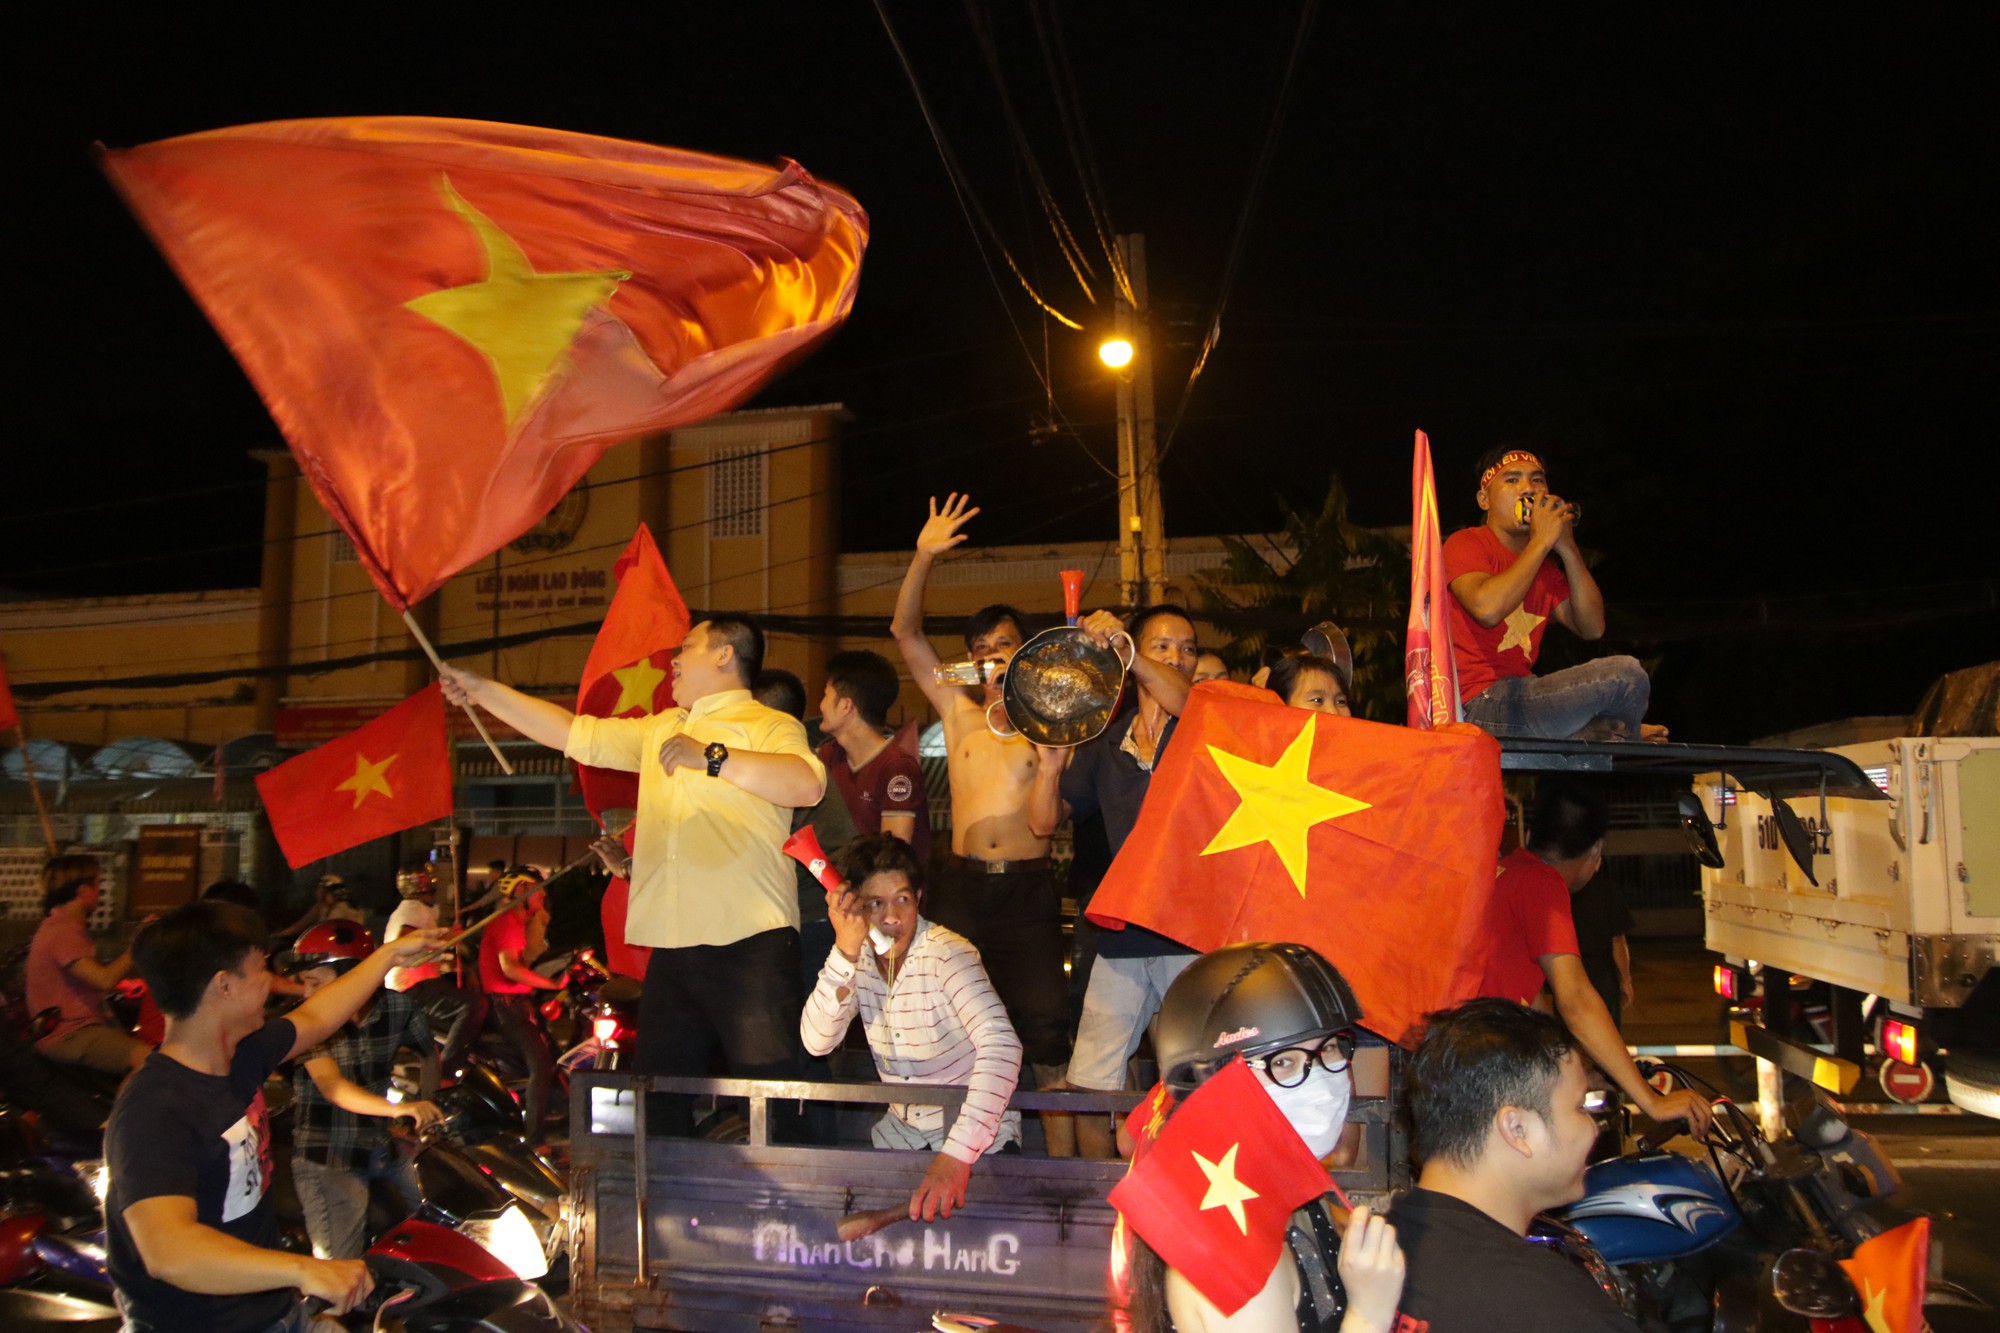 Đội tuyển U23 Việt Nam luôn là niềm tự hào của cả đất nước vì những chiến thắng đầy ấn tượng trên sân cỏ quốc tế. Hãy truy cập ảnh liên quan để ngắm nhìn vẻ đẹp bất tận của đội bóng quê hương.